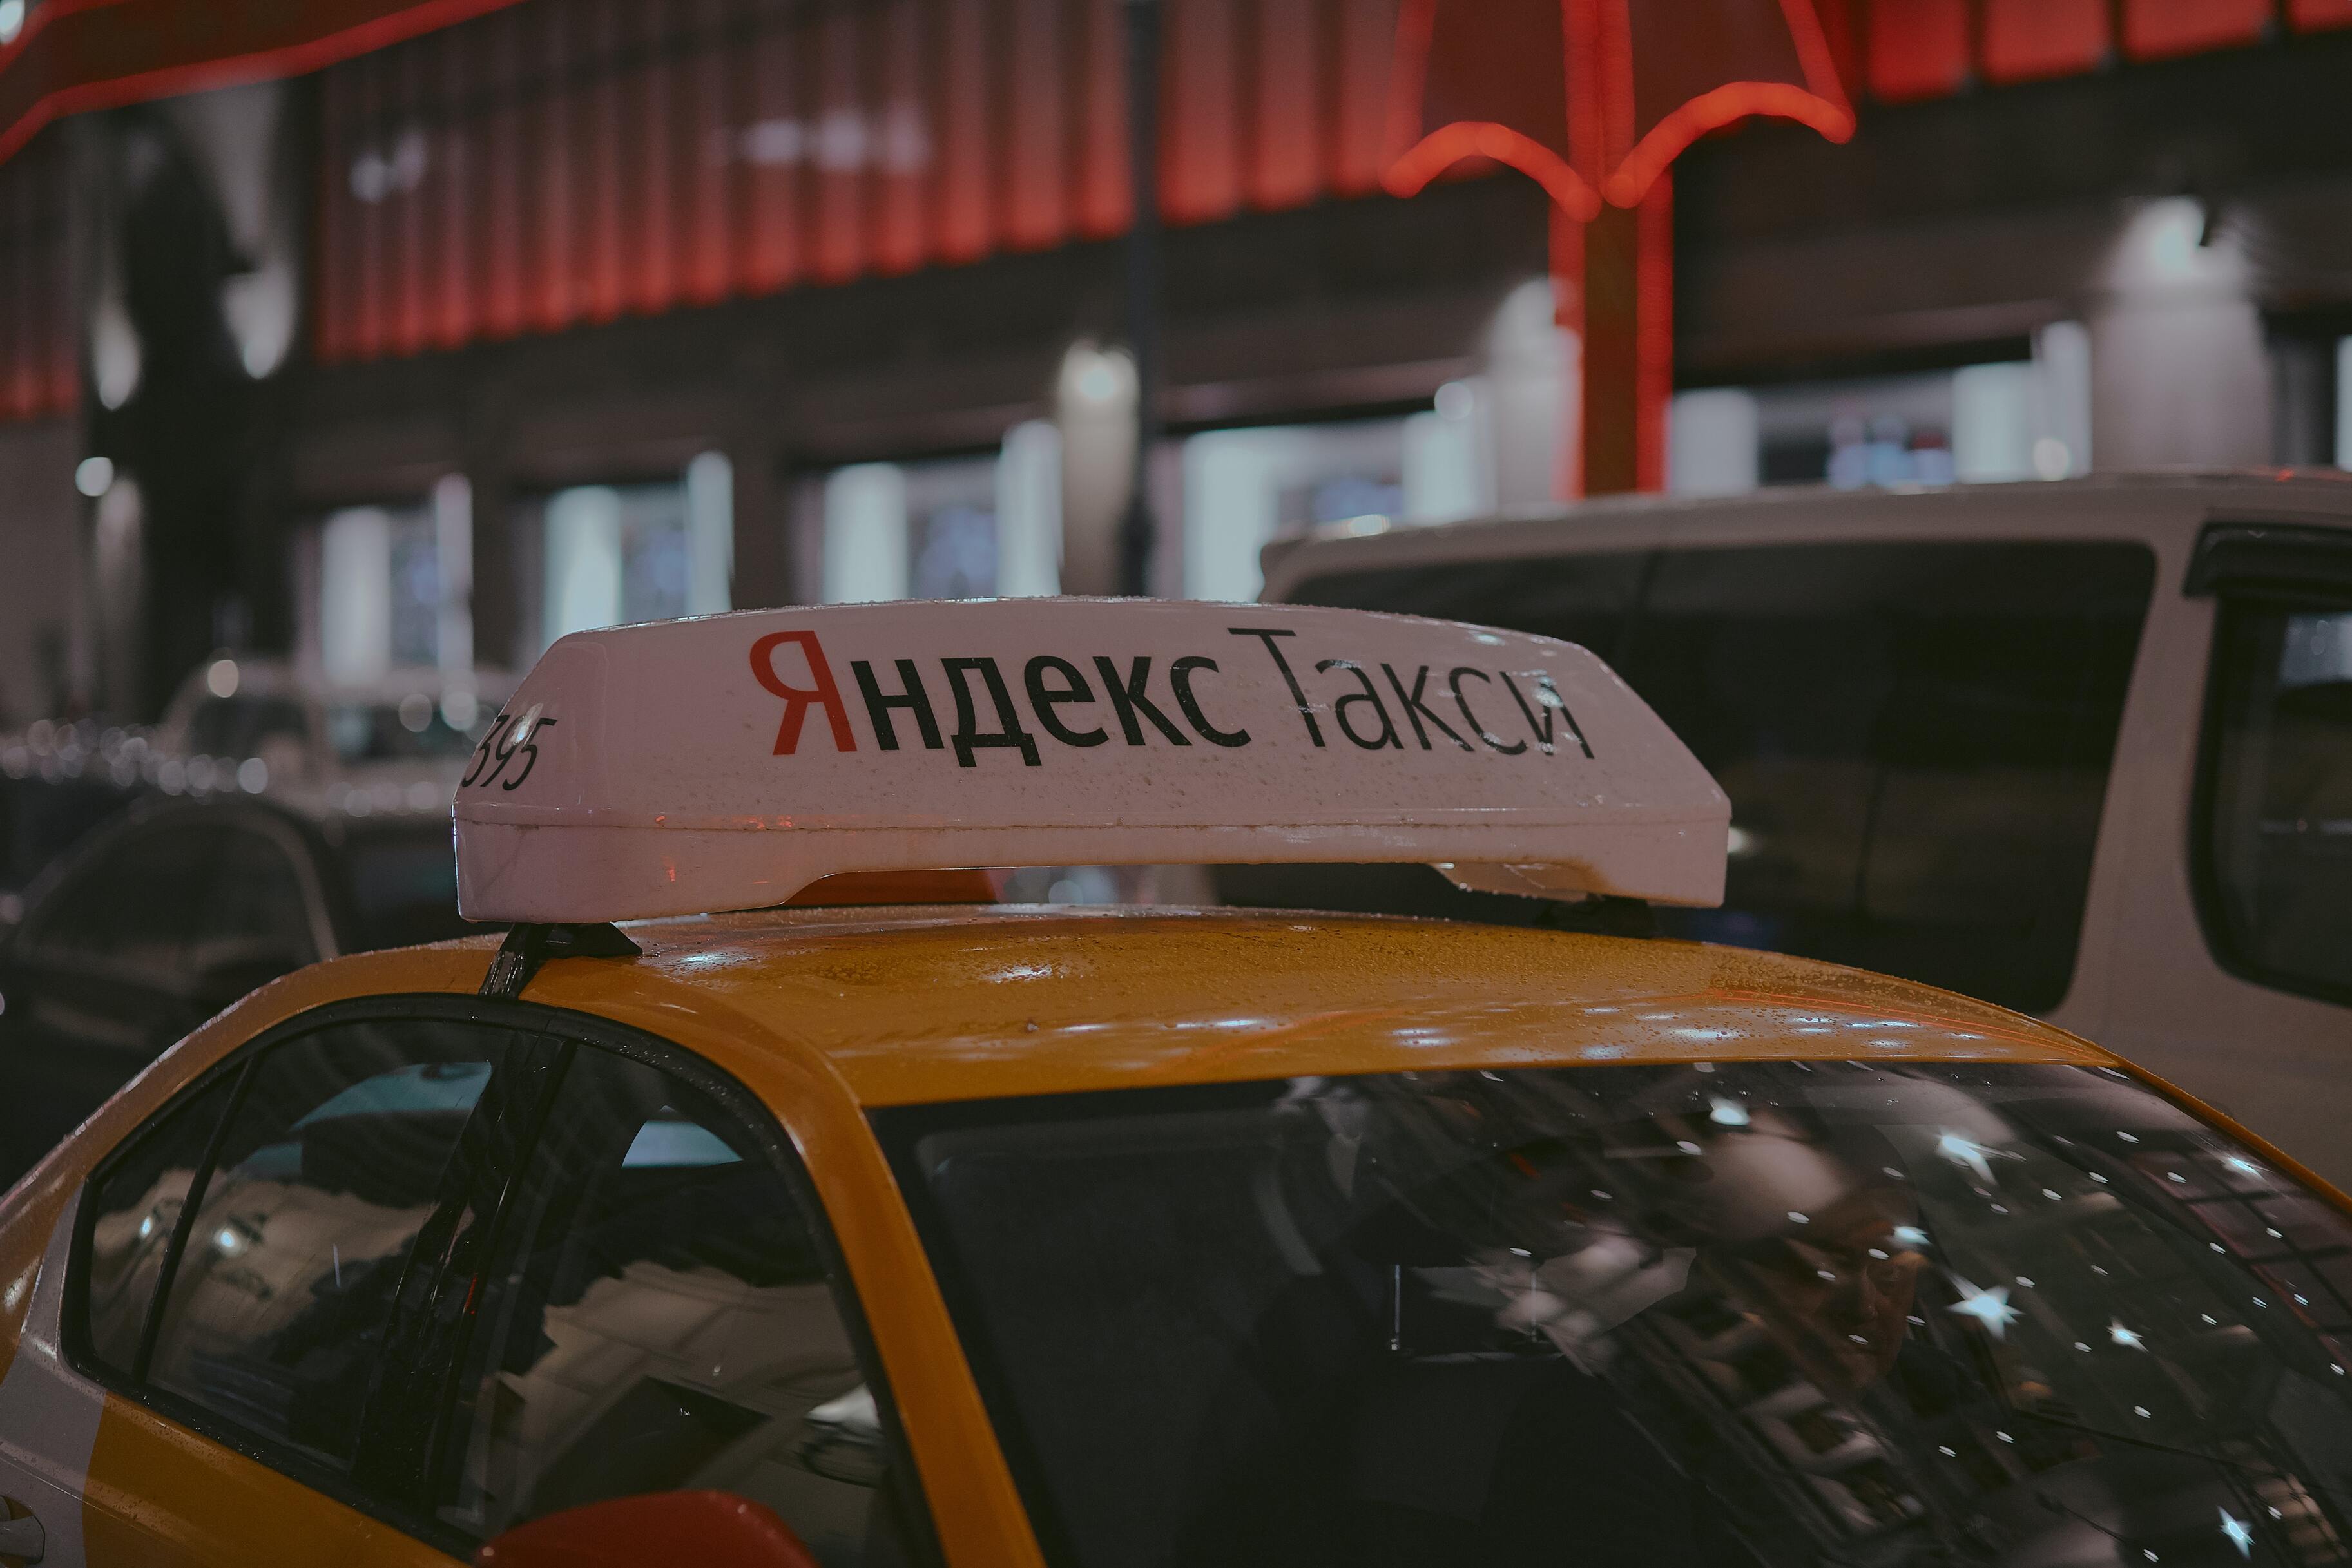 Из-за боязни дефицита Яндекс закупит машины для такси у АвтоВАЗа